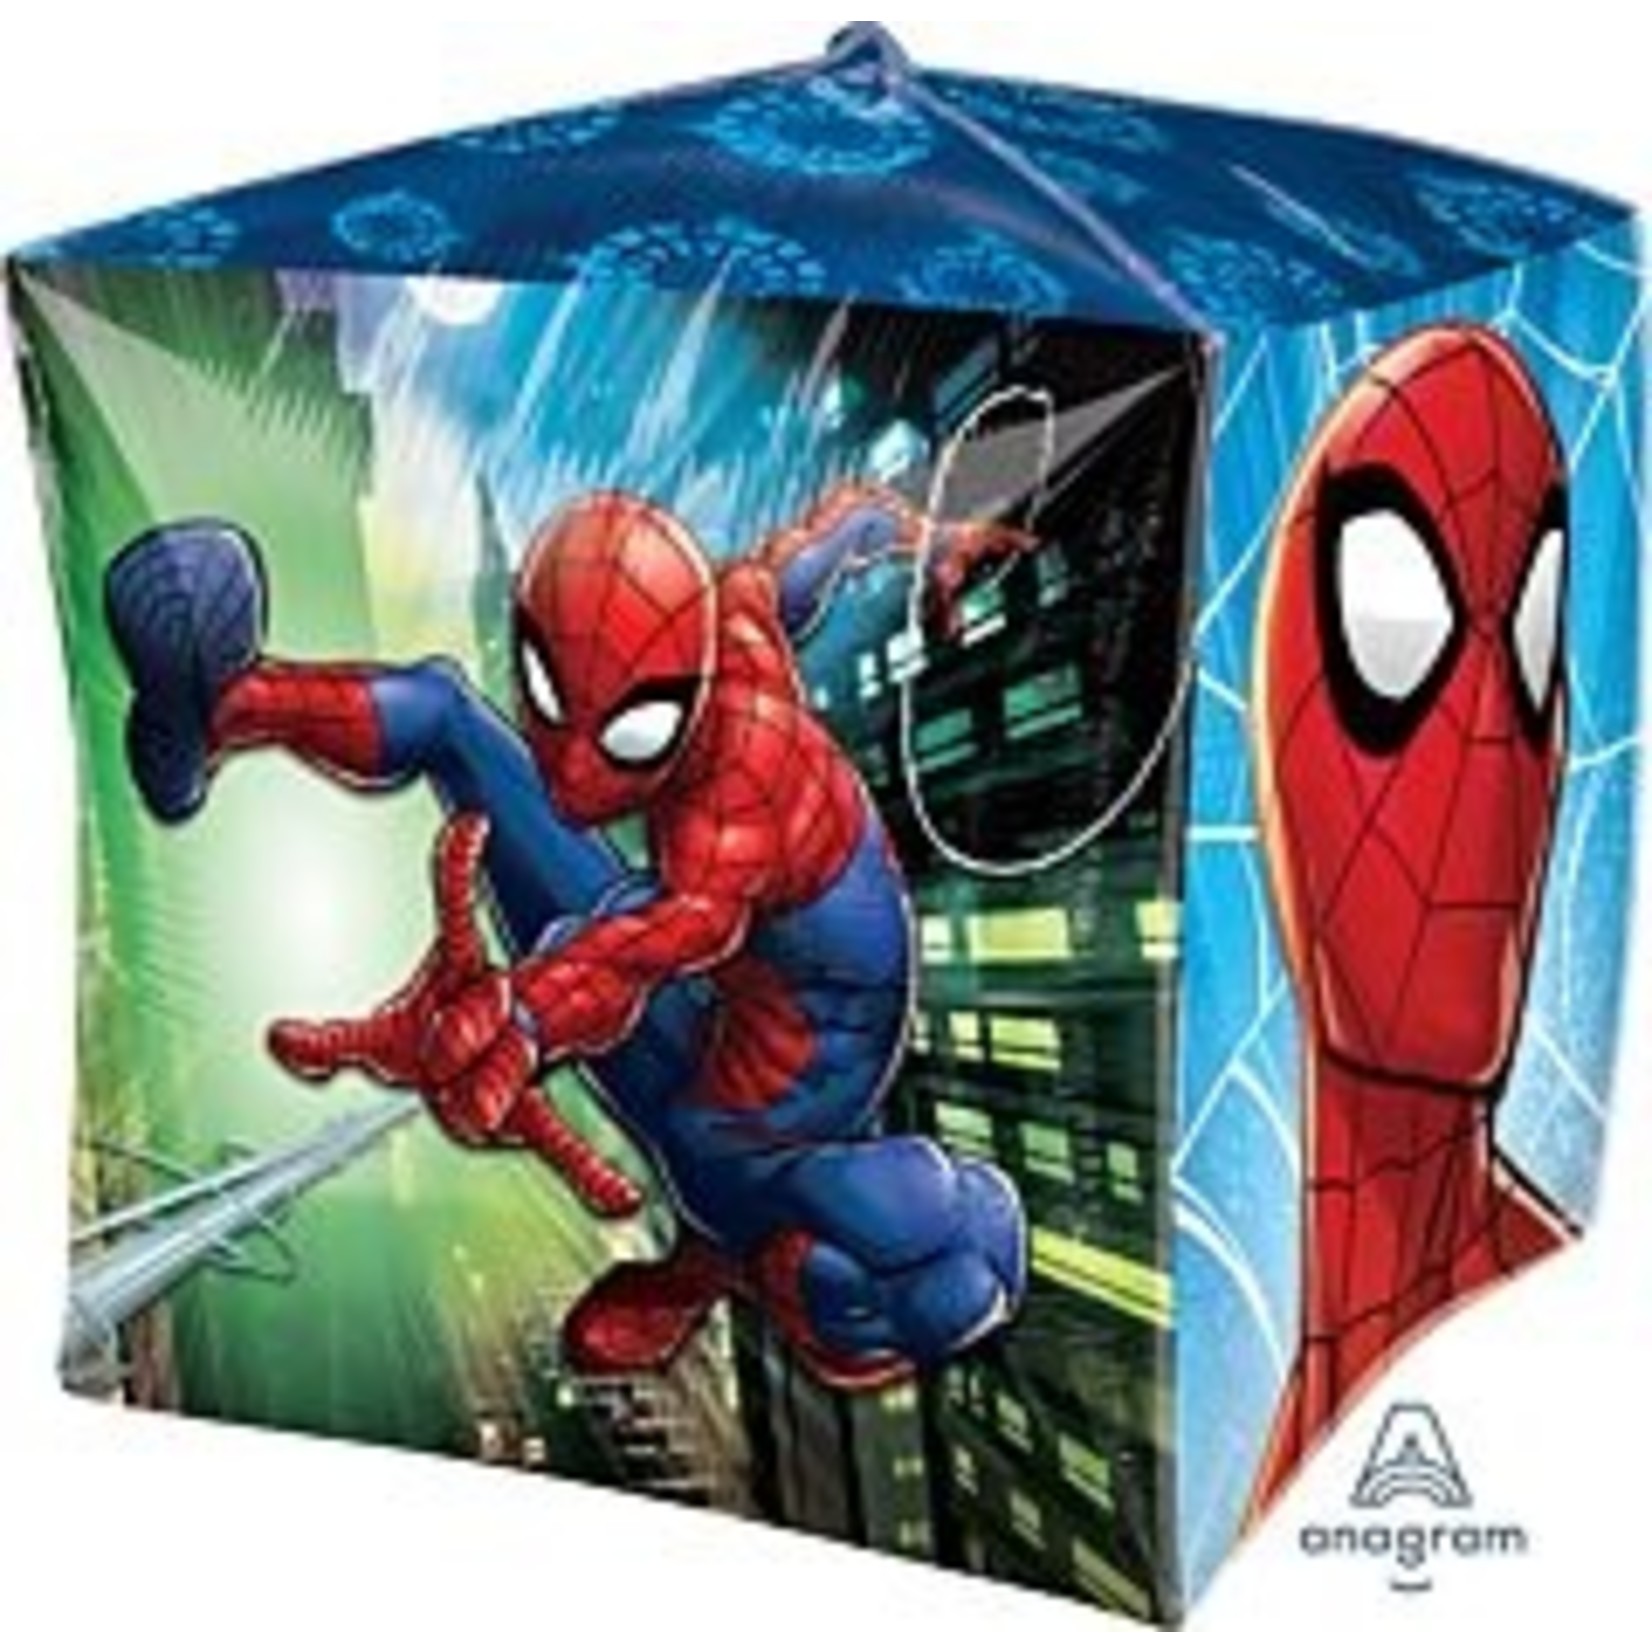 15" Spider-Man Cubez